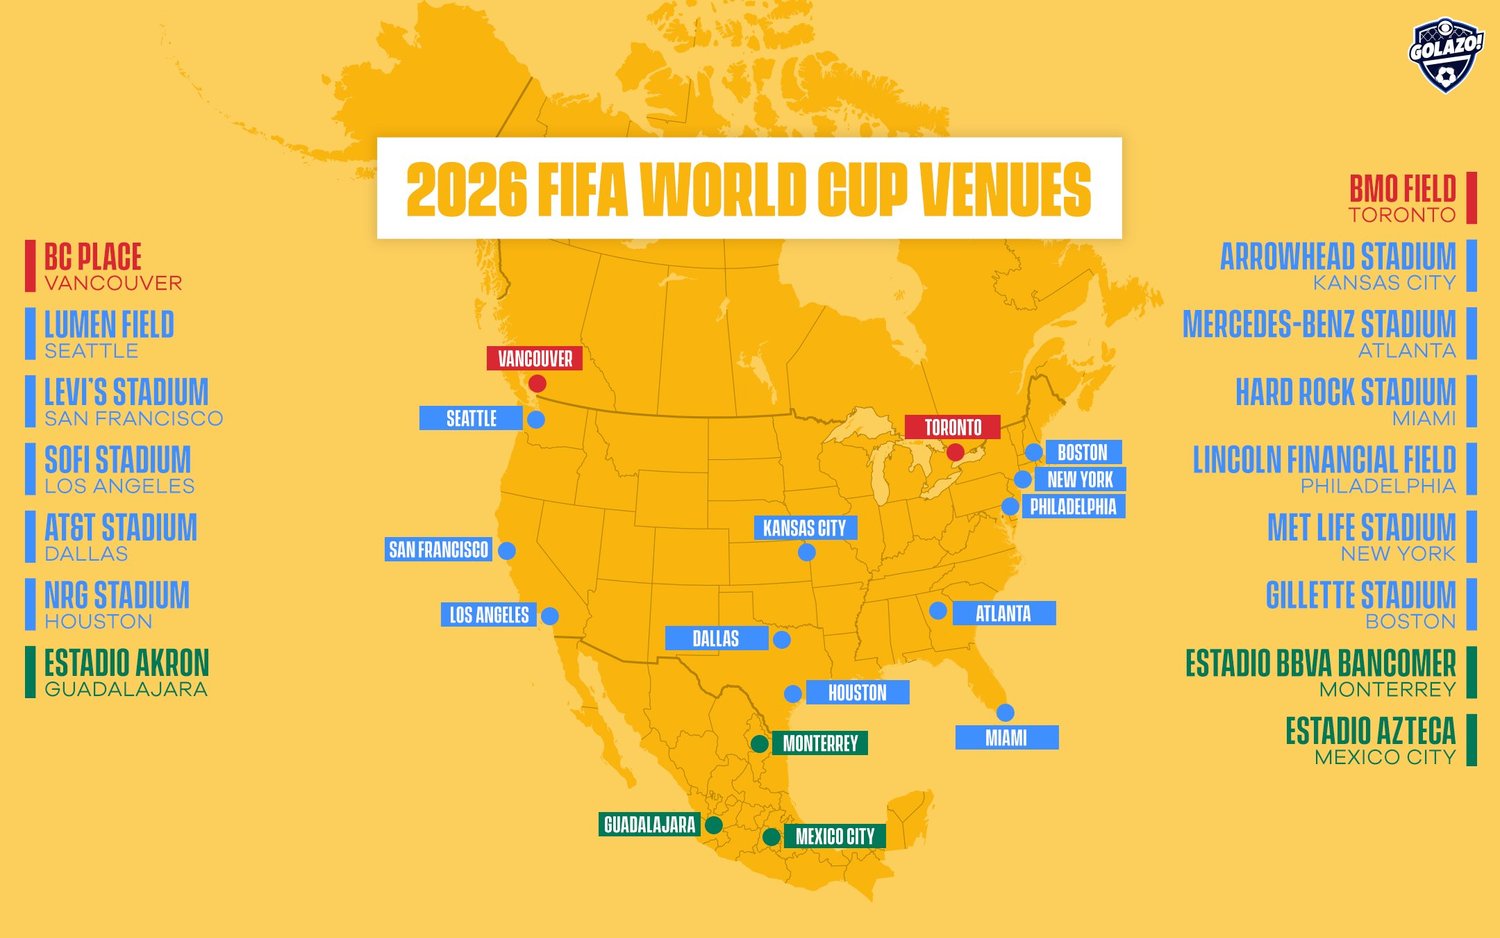 La FIFA reveló el calendario del Mundial 2026! - Noticias Viajeras: de Actualidad, Curiosas... - Foro General de Viajes